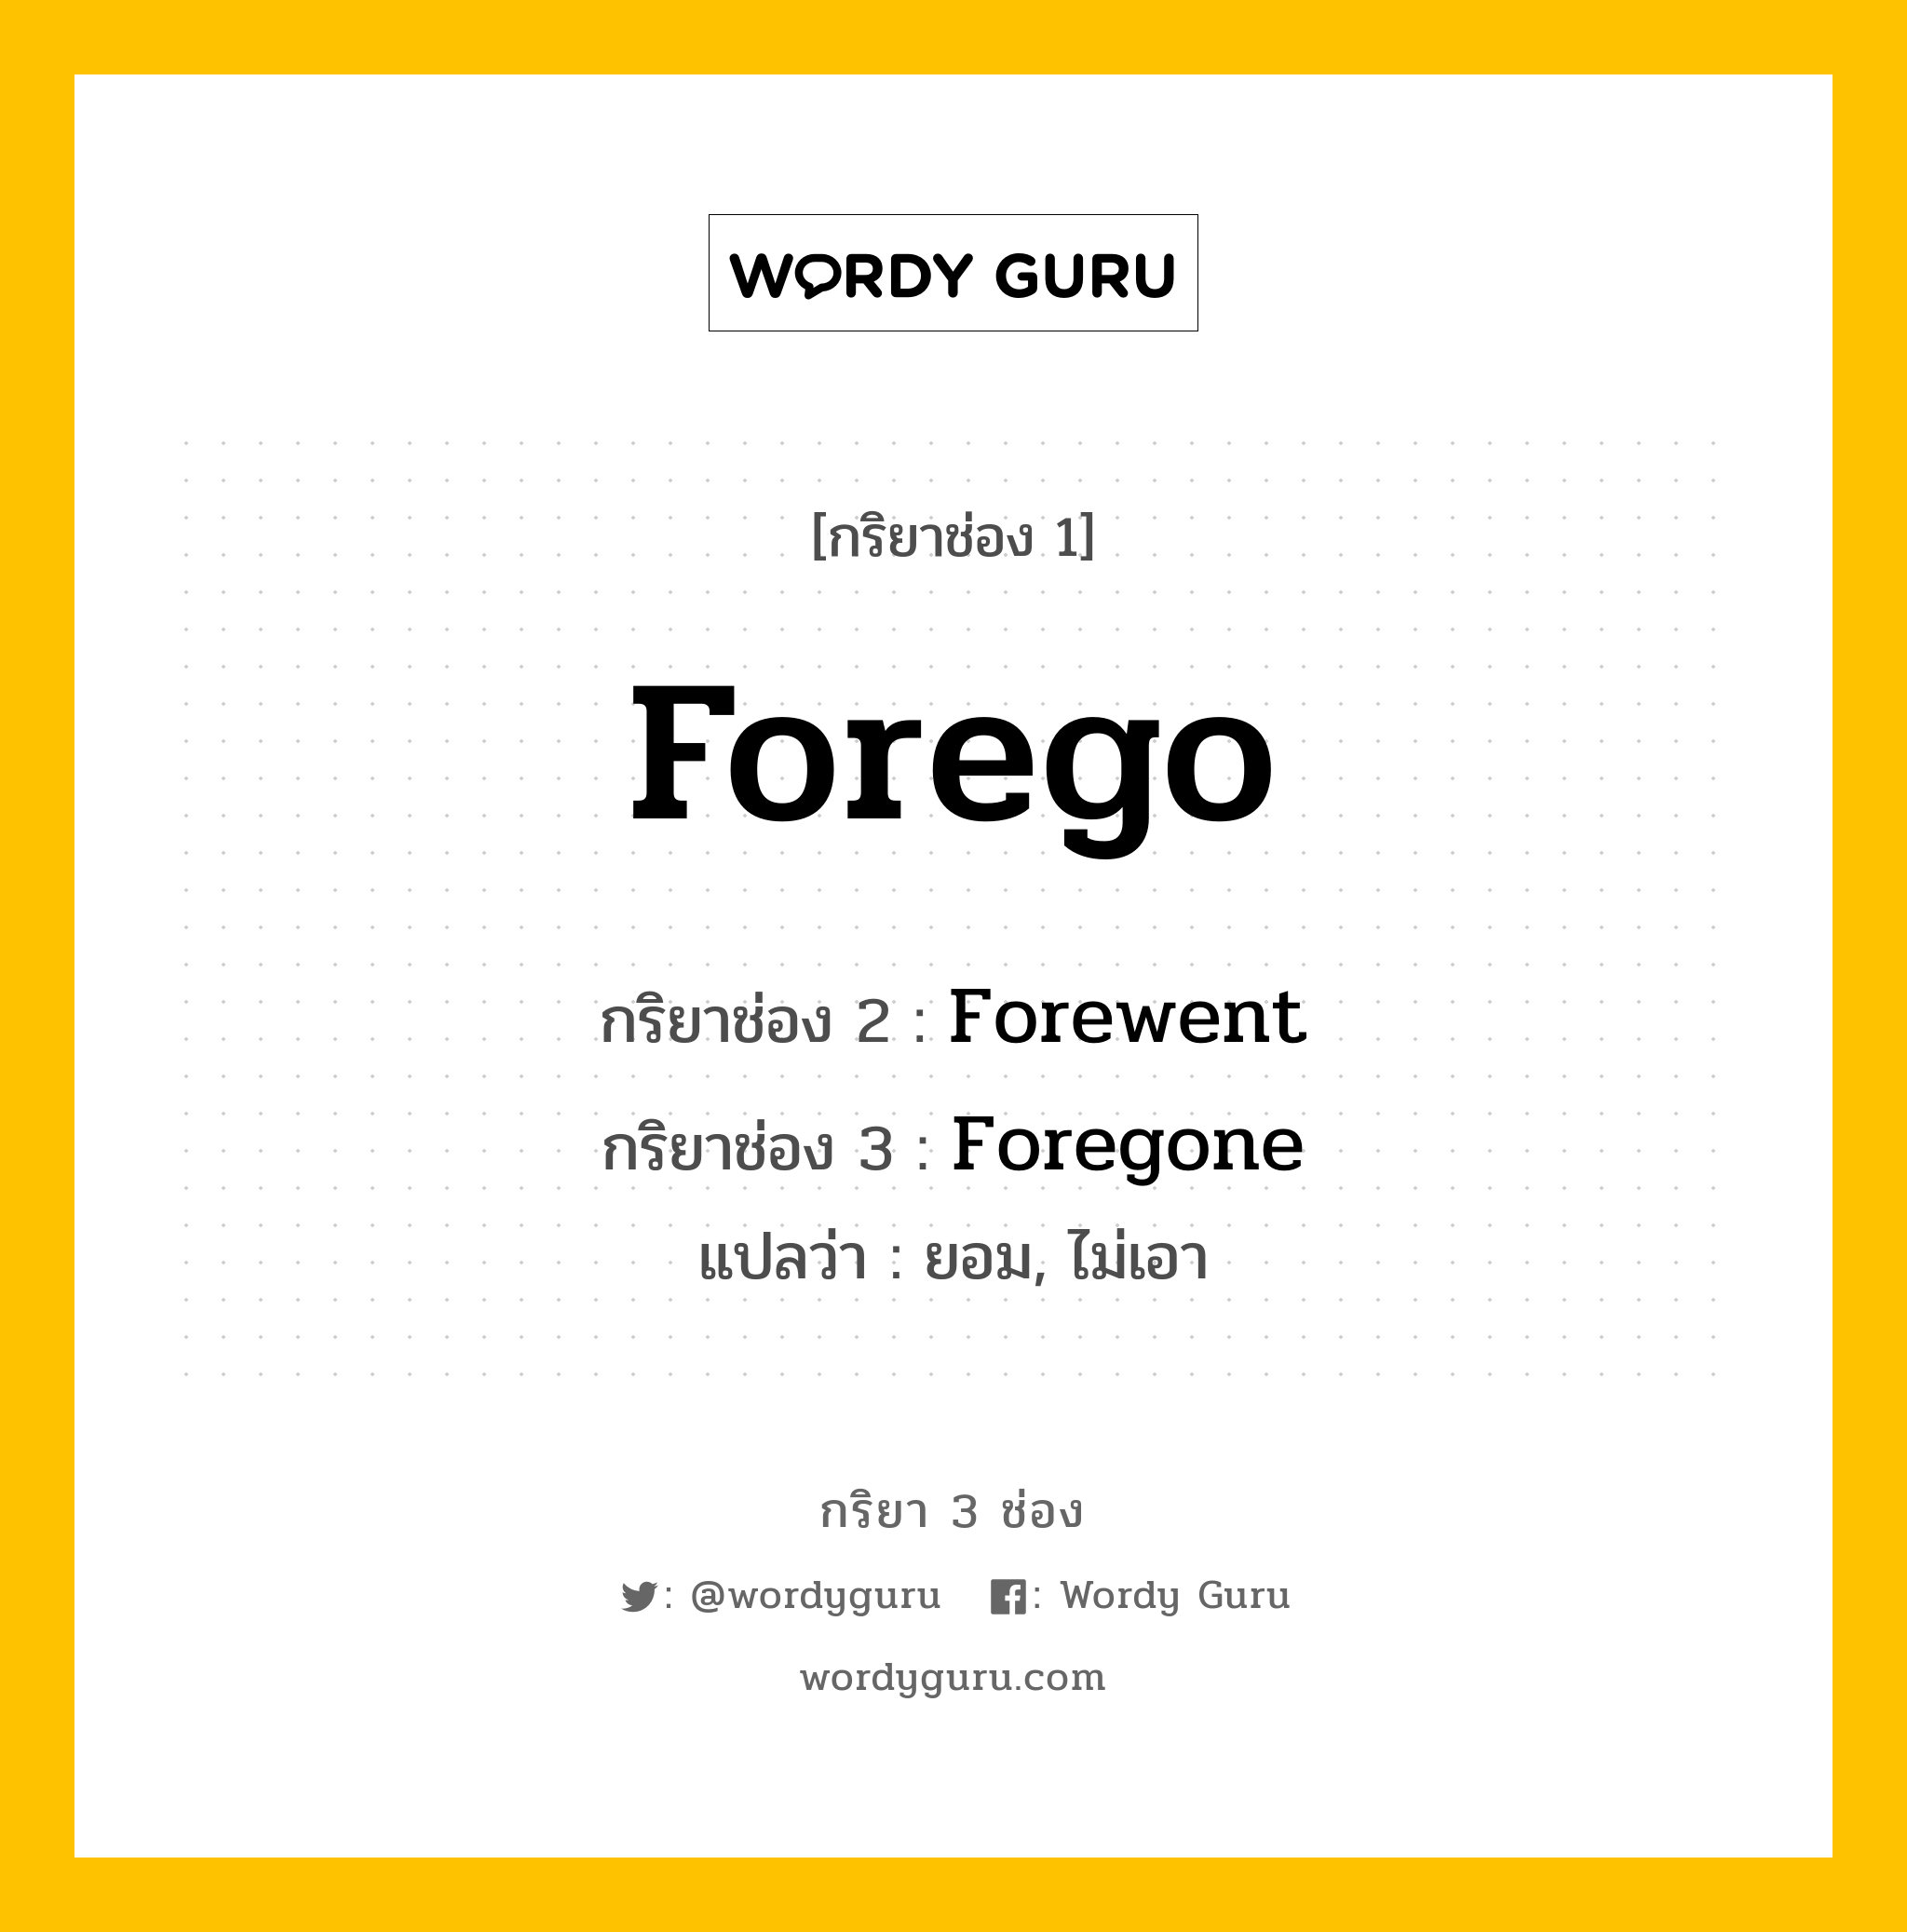 กริยา 3 ช่อง: Forego ช่อง 2 Forego ช่อง 3 คืออะไร, กริยาช่อง 1 Forego กริยาช่อง 2 Forewent กริยาช่อง 3 Foregone แปลว่า ยอม, ไม่เอา หมวด Irregular Verb